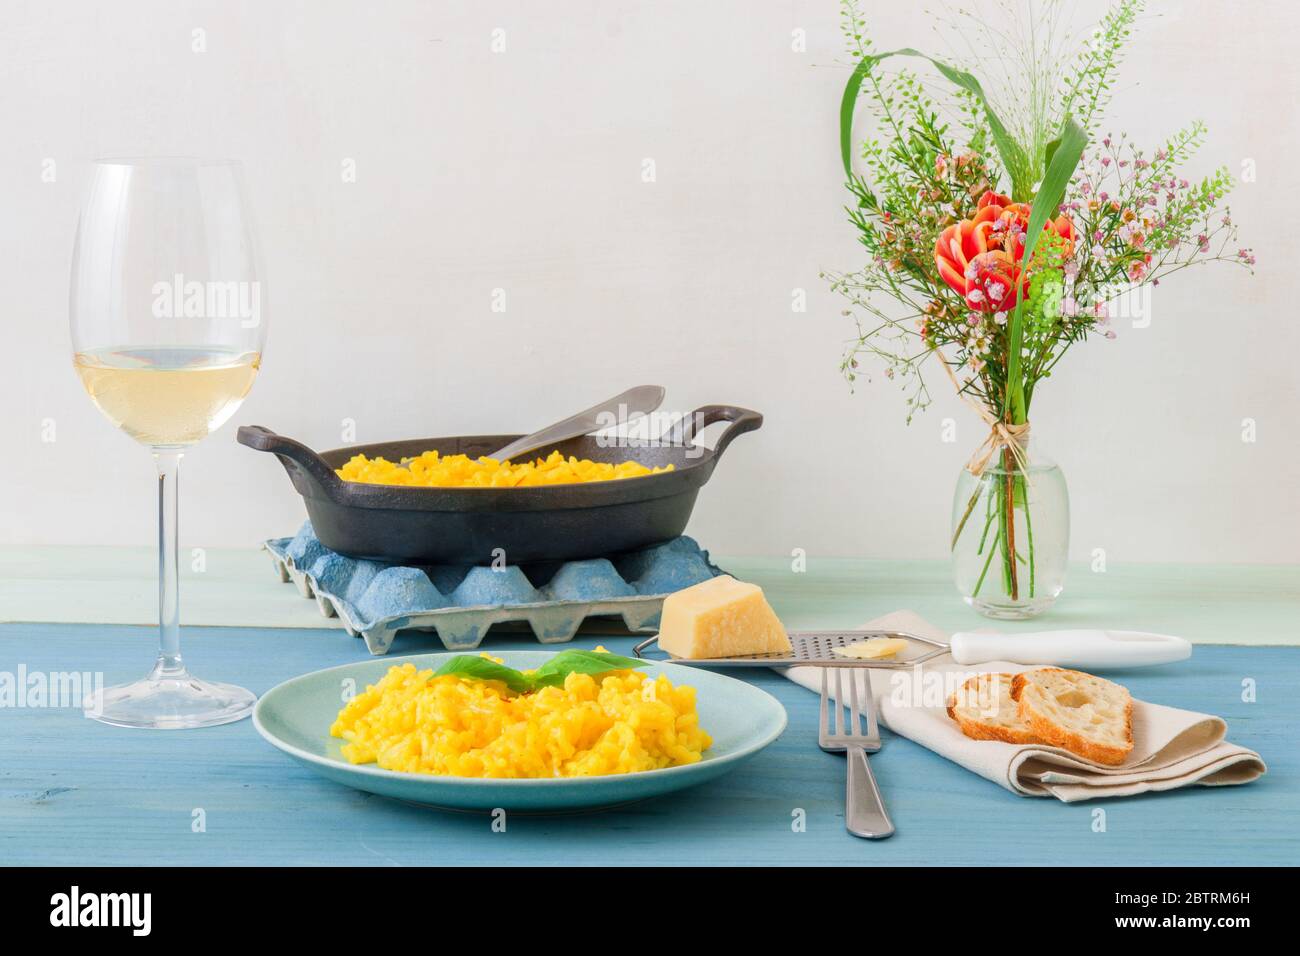 Risotto Mailänder, Holztisch mit traditionellem italienischen Safranrisotto, Gläsern und Krug Wein, Flasche Olivenöl, Korb mit Brot und Blumen Stockfoto